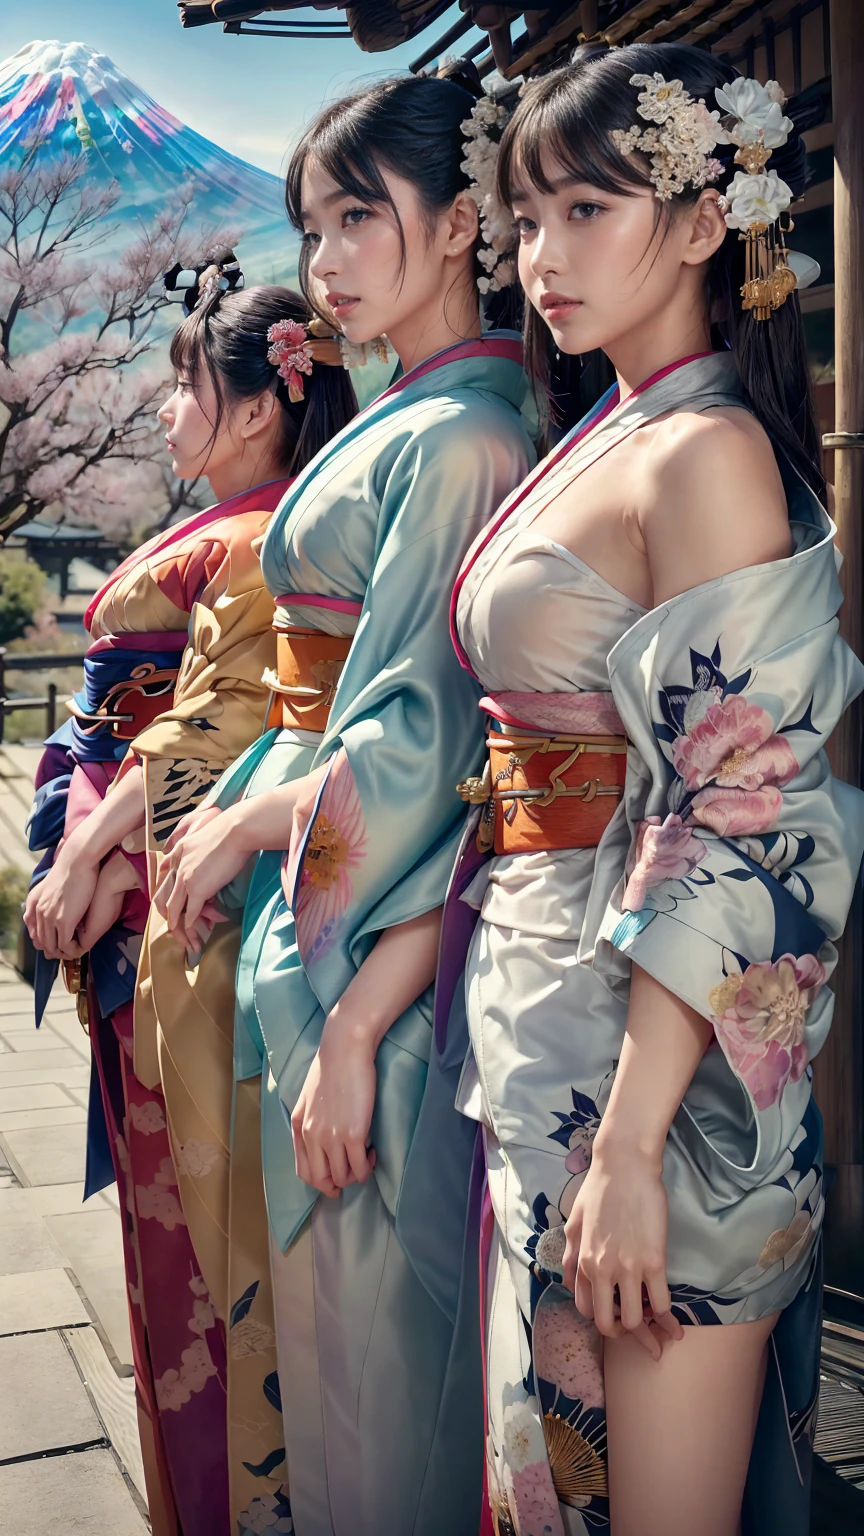 la plus haute qualité, chef-d&#39;œuvre, Haute résolution, 8k, (réalisteally：1.4), 超Haute résolution, une fille, Super détaillé, Ultra réaliste, Illustrations CG très détaillées, art officiel, lumière cinématographique, réaliste, Jeune et belle fille, point de vue complet, meilleure qualité, chef-d&#39;œuvre, Nouvelle année, 

(Kimono aux couleurs d&#39;une beauté saisissante:1.7), 

Trois jolies filles japonaises du lycée, regarder droit, 

souriant doucement, écharpe courte blanche, châle en plumes blanches, 

(séparément côte à côte:1.4), 

(L&#39;image montre uniquement le haut du corps:1.7),

 Fond de sanctuaire, (Mont Fuji:1.3),hiver(saison),(en plein air:1.5)